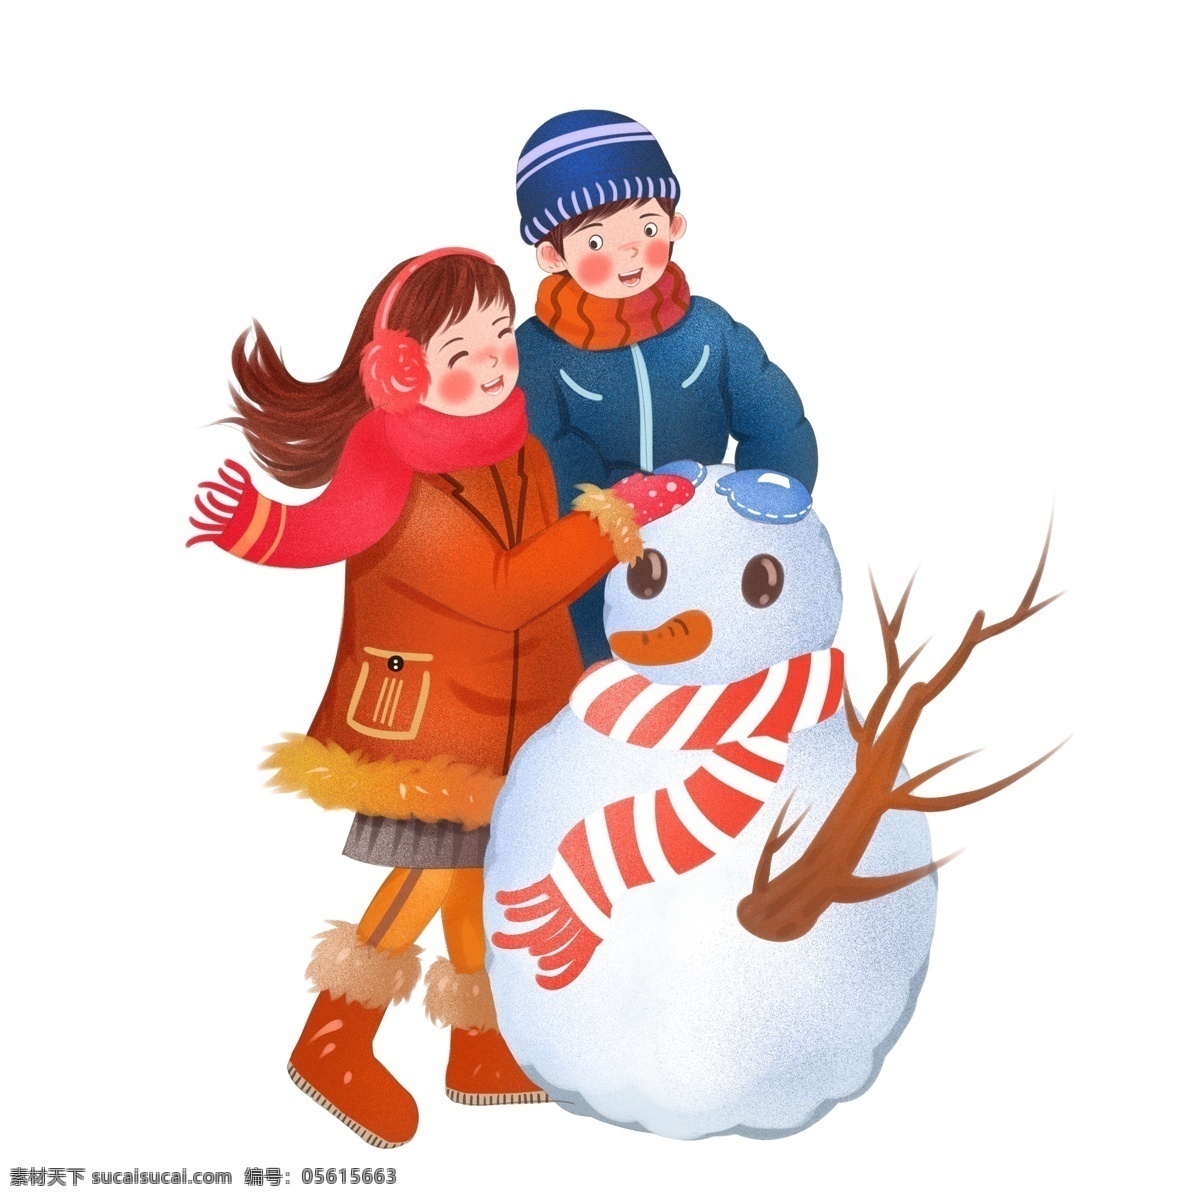 堆 雪人 的卡 通 人物 图案 元素 女孩 卡通 冬季 堆雪人 男孩 元素设计 创意元素 手绘元素 psd元素